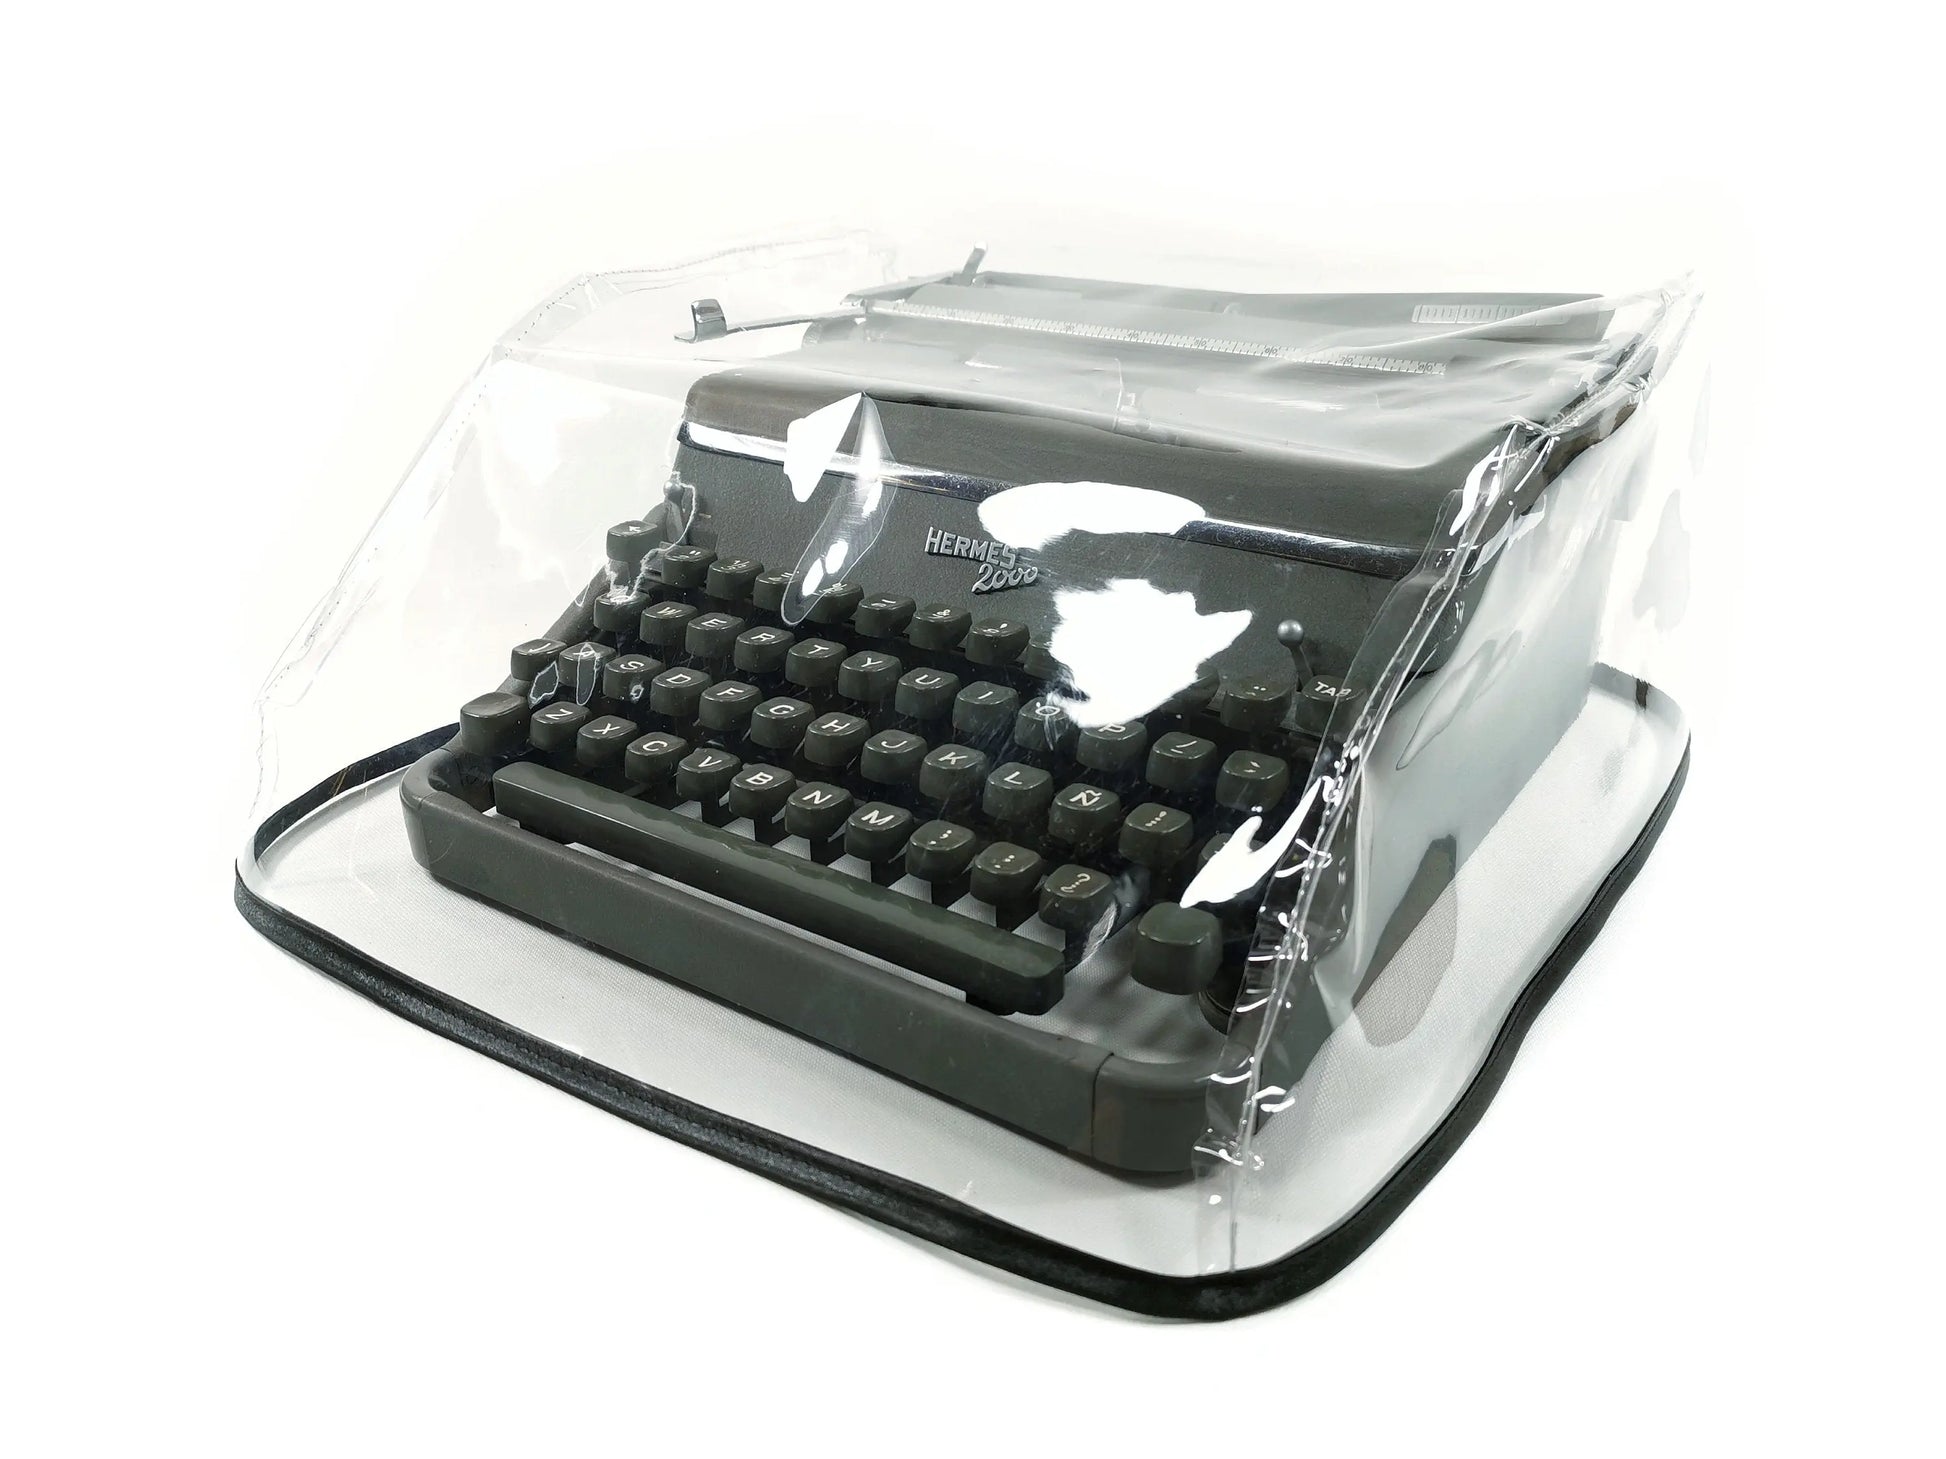 MEDIUM Transparent Dust Cover, Vinyl PVC for M size Typewriter Hermes 2000, Hermes 3000, Hermes Media3 - ElGranero Typewriter.Company